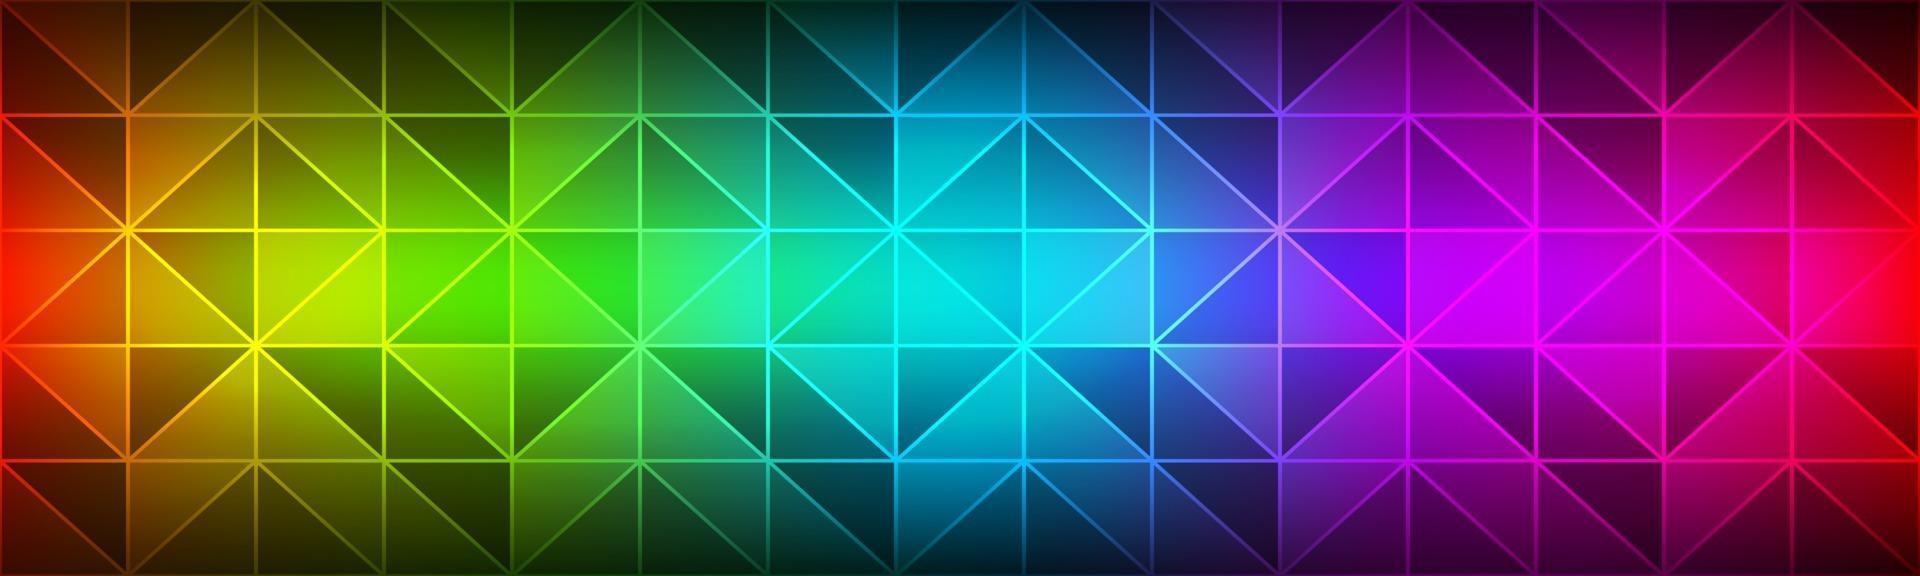 espectro de cores cabeçalho moderno polígono textura geométrica banner mosaico triangular design criativo moderno modelos vetor